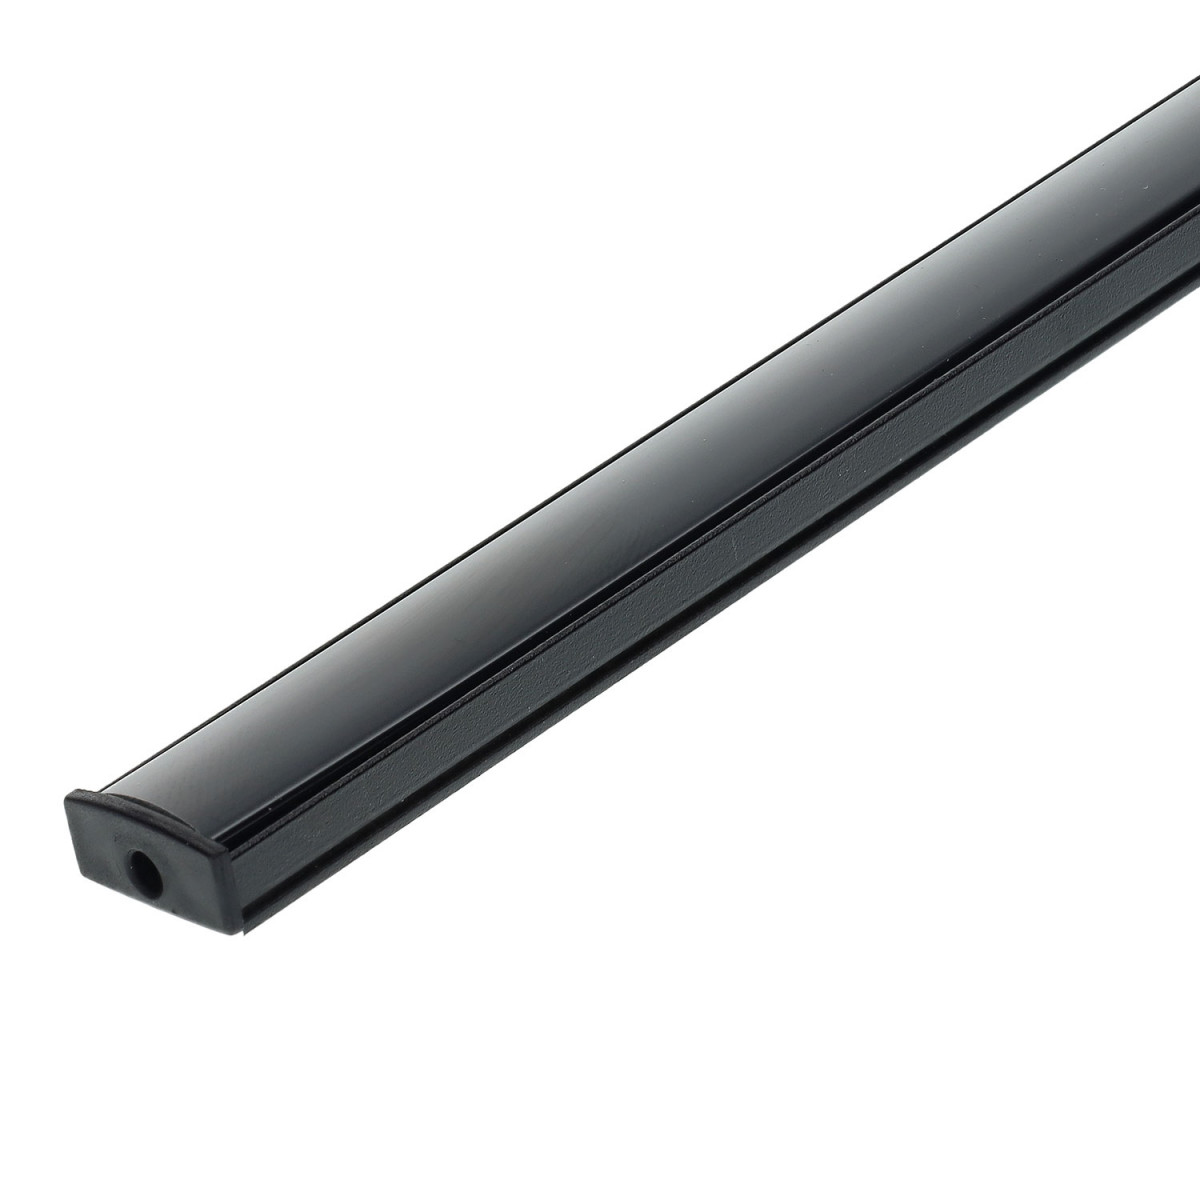 Rectangular profile aluminum strip led 1m black